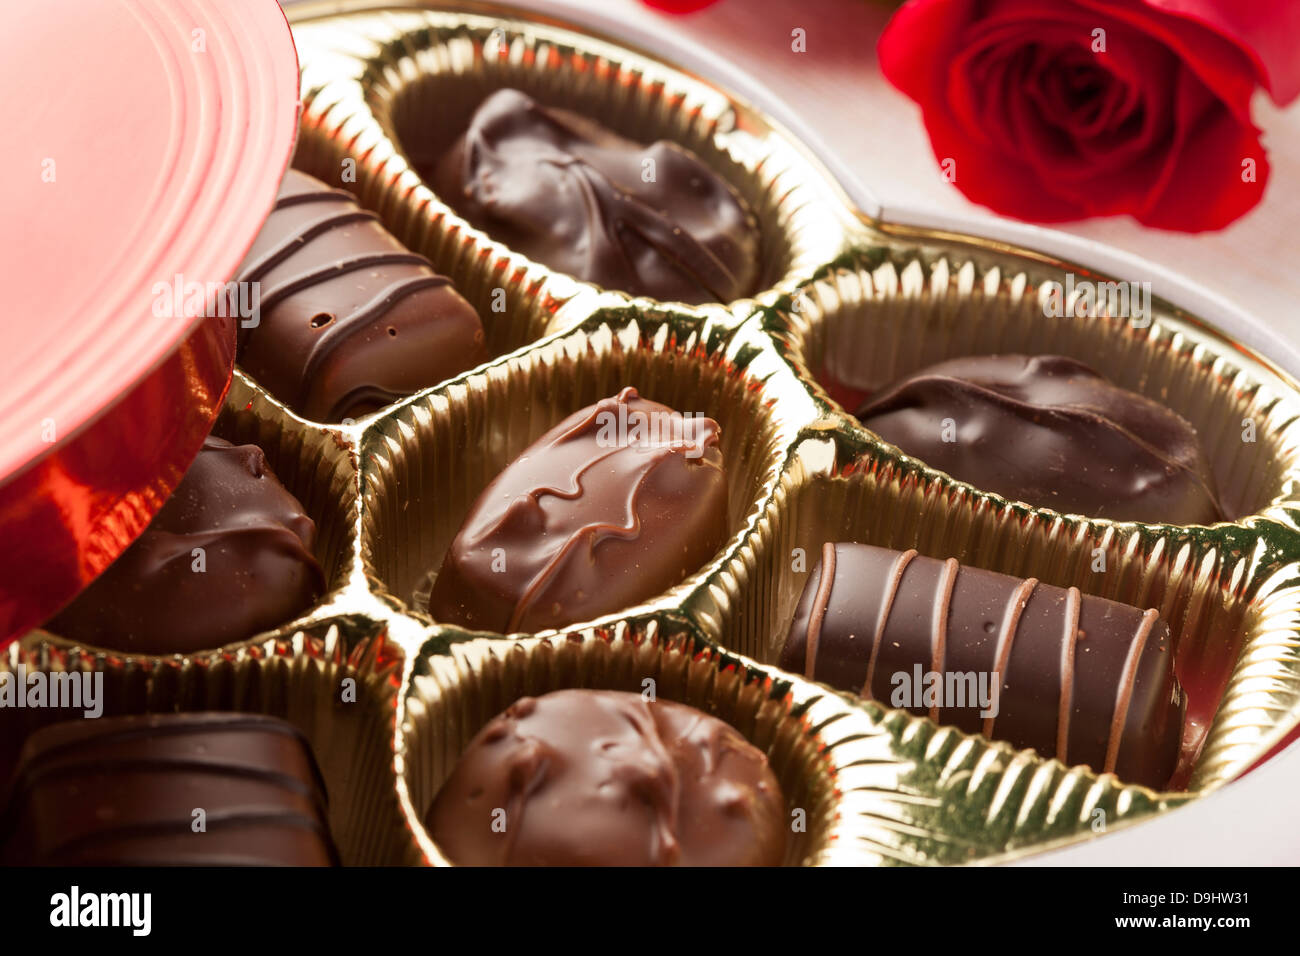 Fancy Caja De Chocolates Gourmet Para El Día De San Valentín Fotos